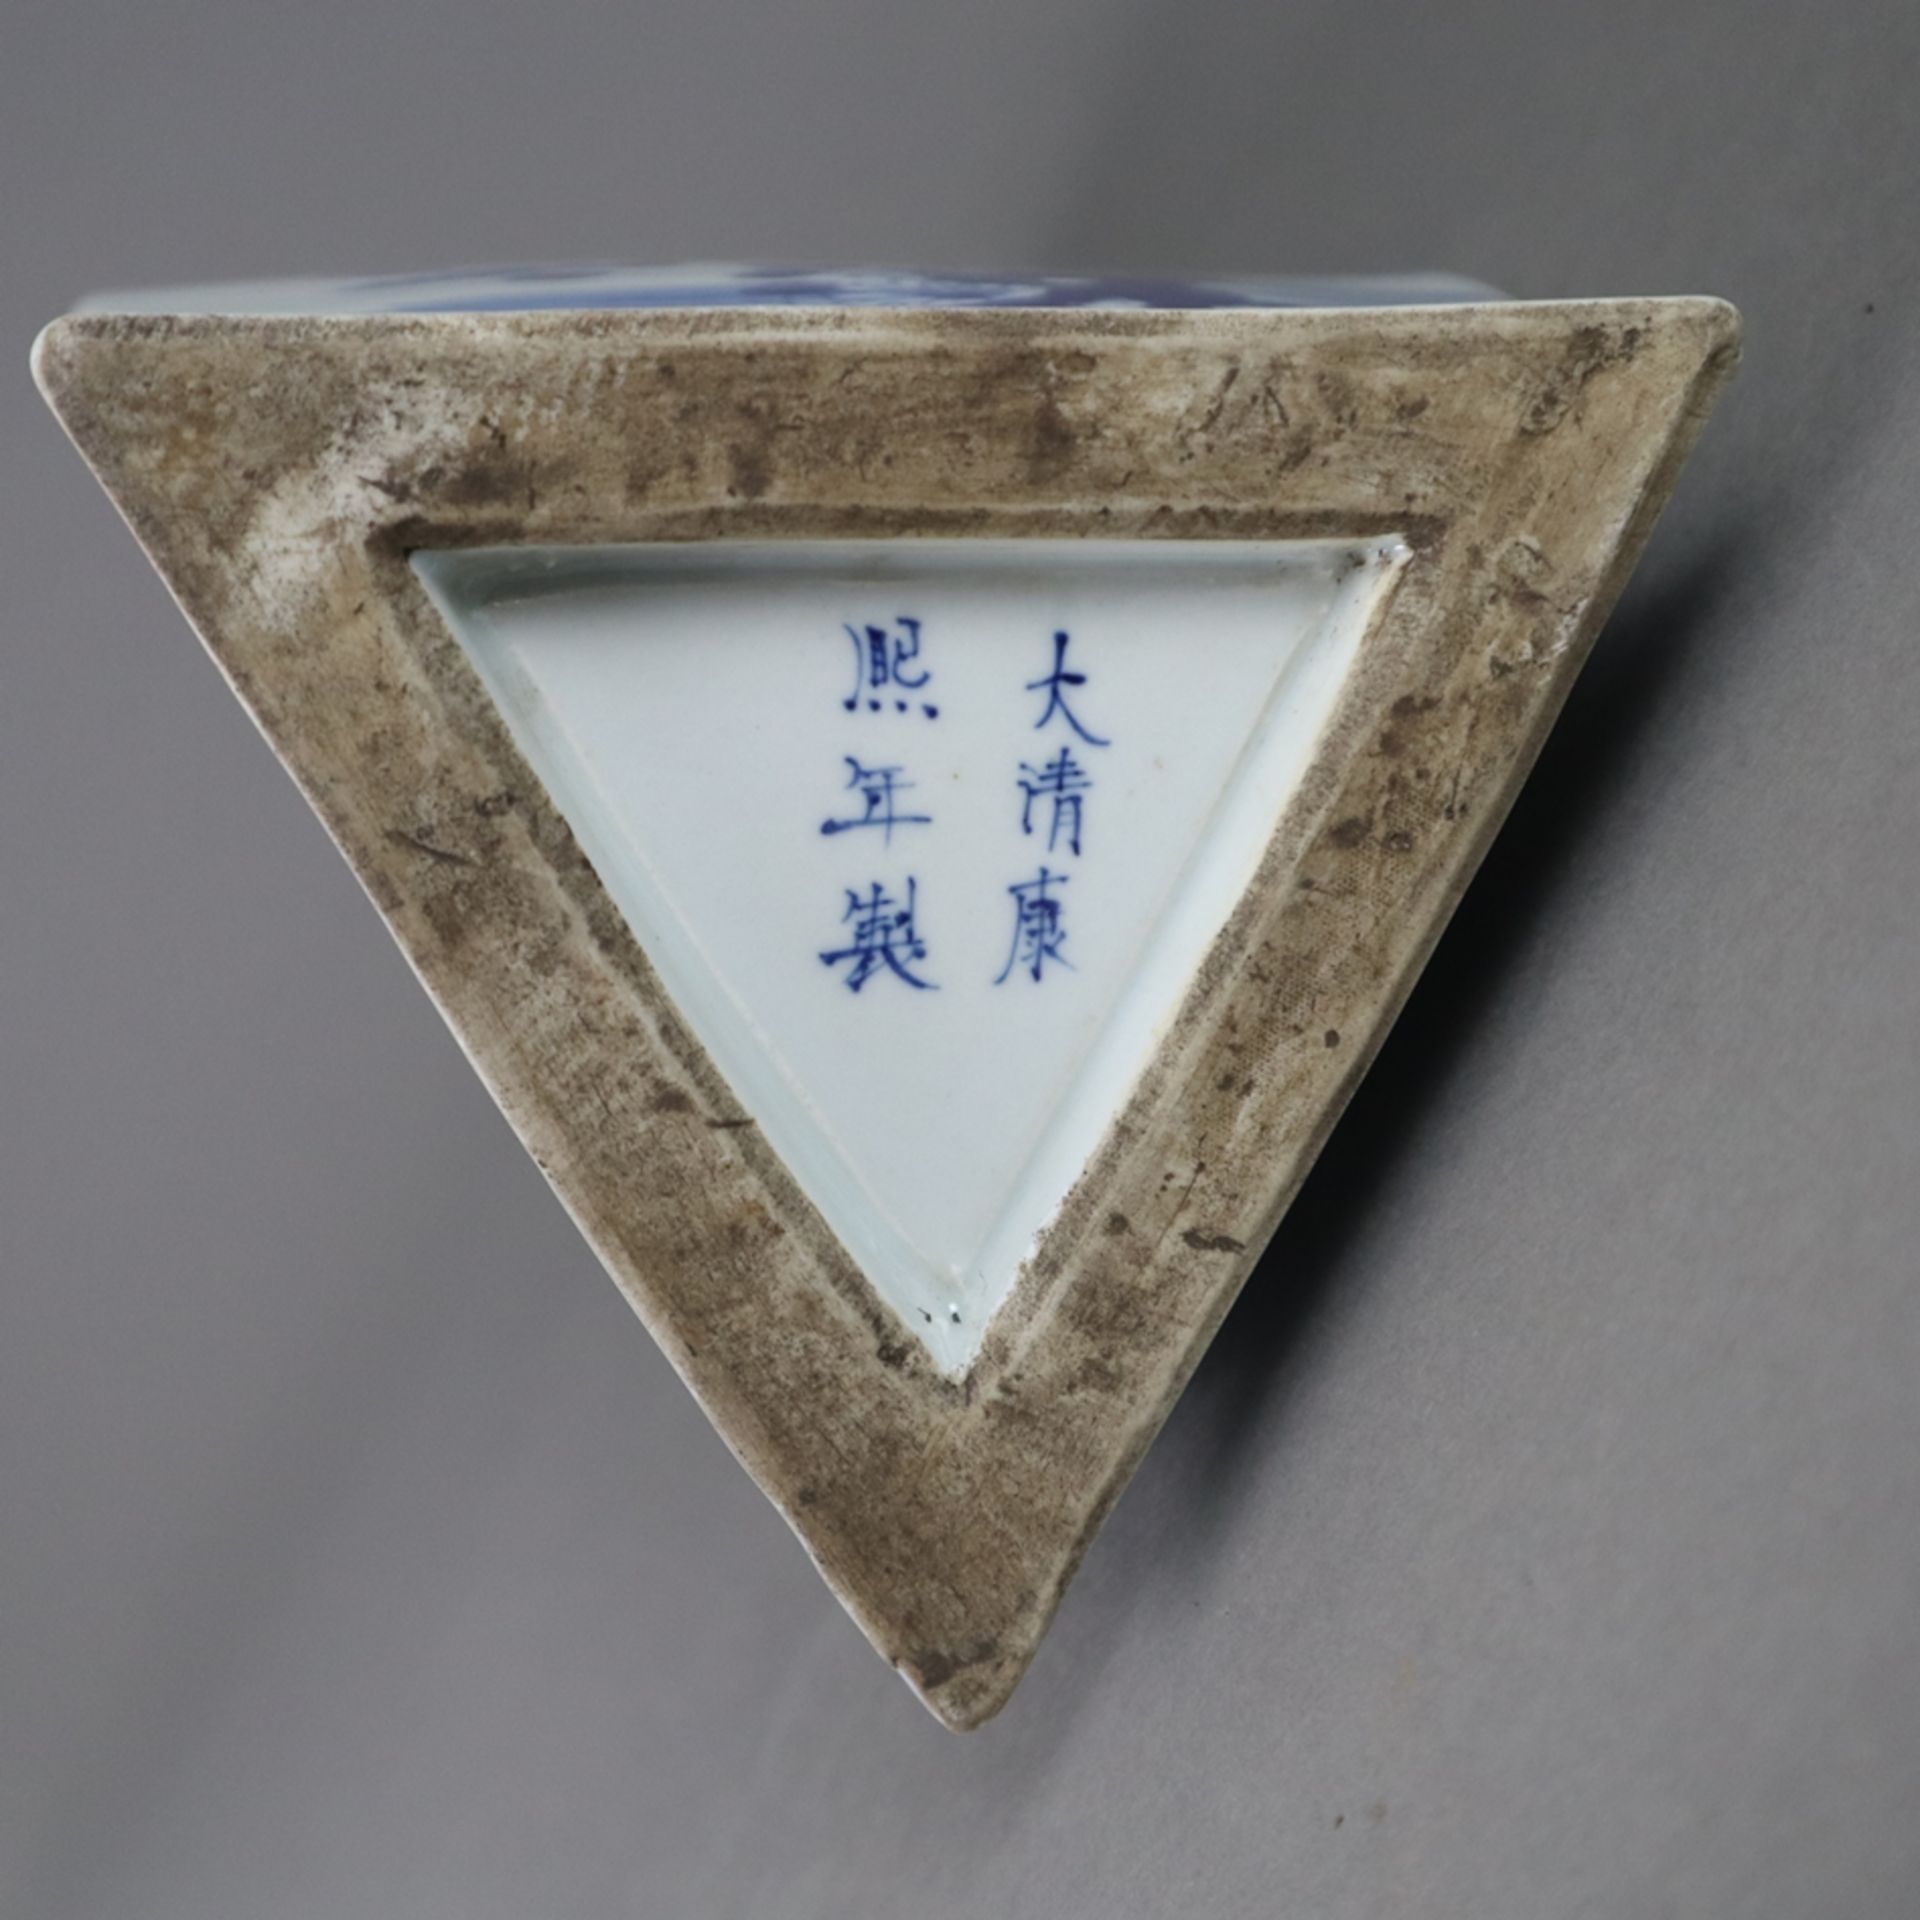 Dreieck-Vase - China, allseits dekoriert in Unterglasurblau, Wandung mit von Ornamentborten gerahmt - Bild 9 aus 9